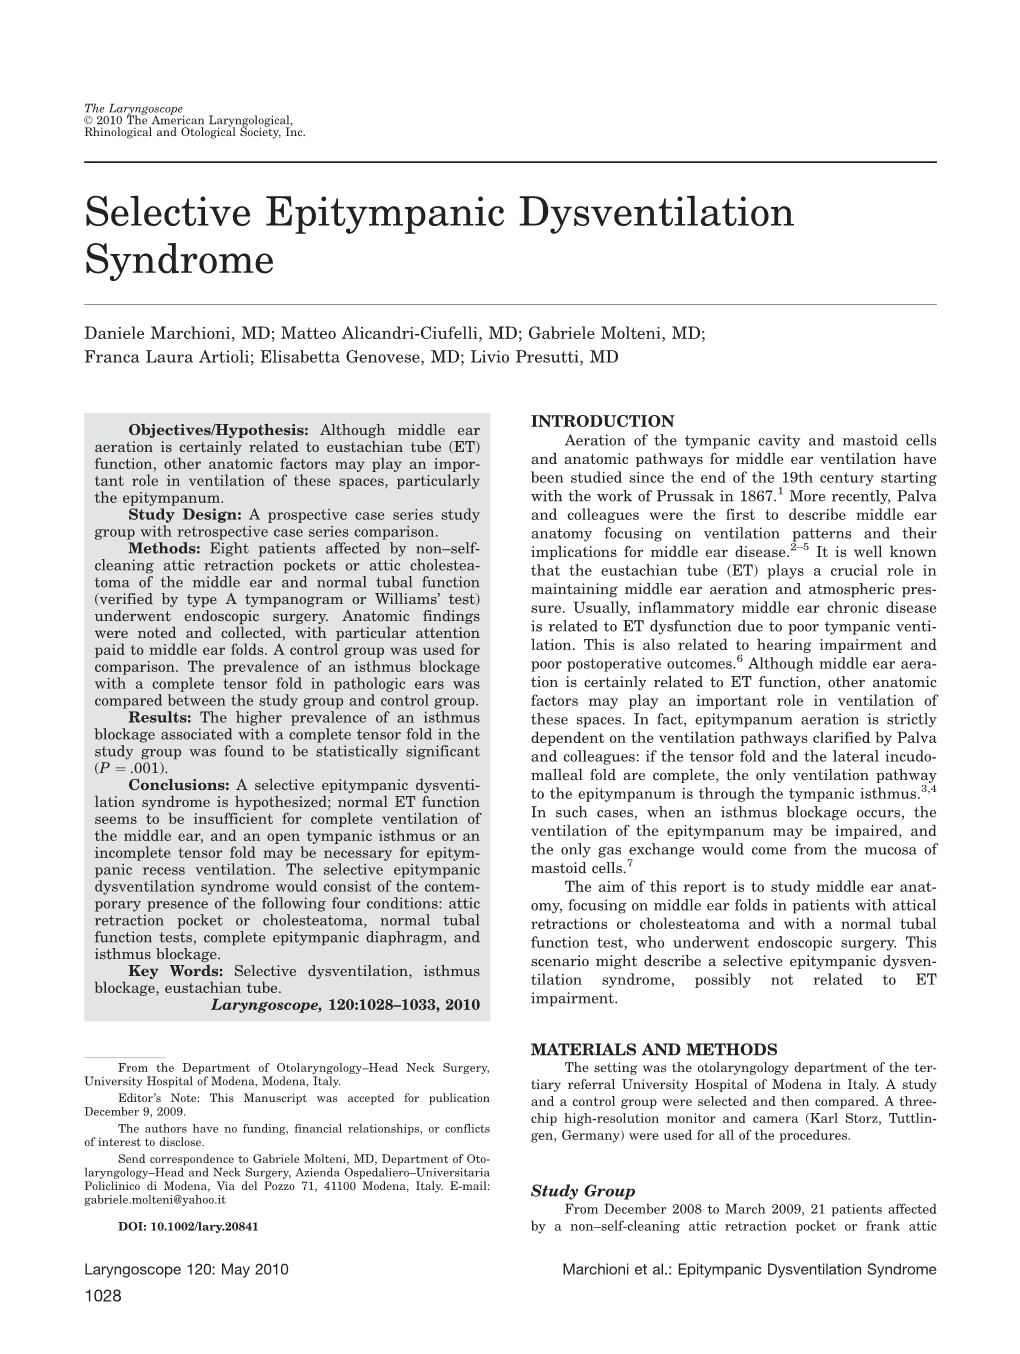 Selective Epitympanic Dysventilation Syndrome